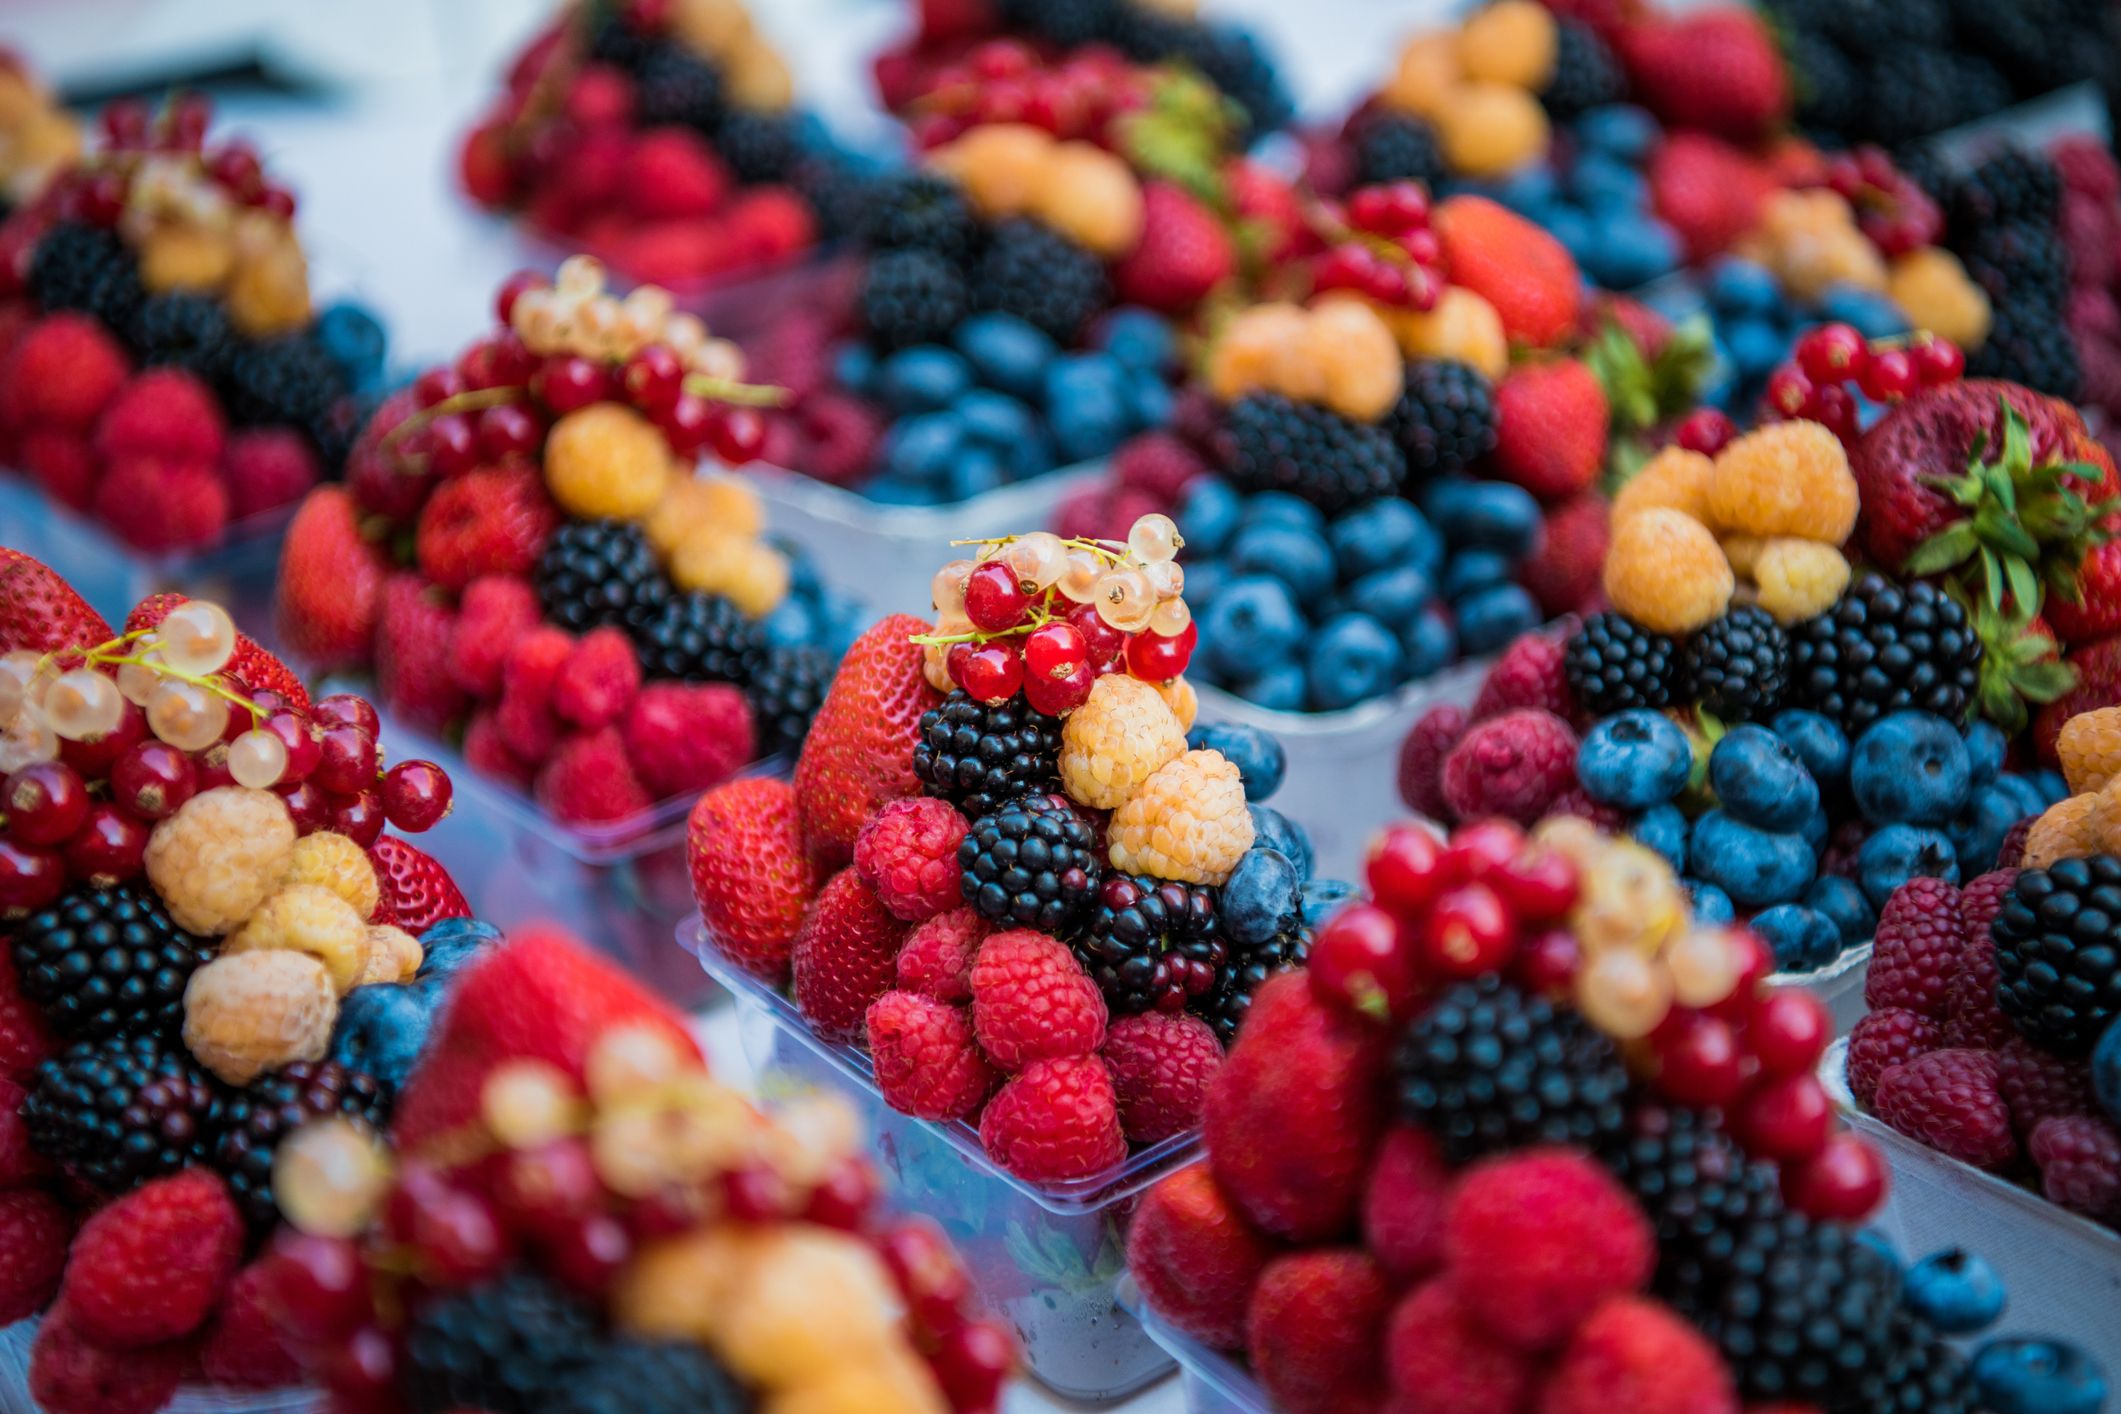 水果、浆果和蔬菜在市场街上在柜台上